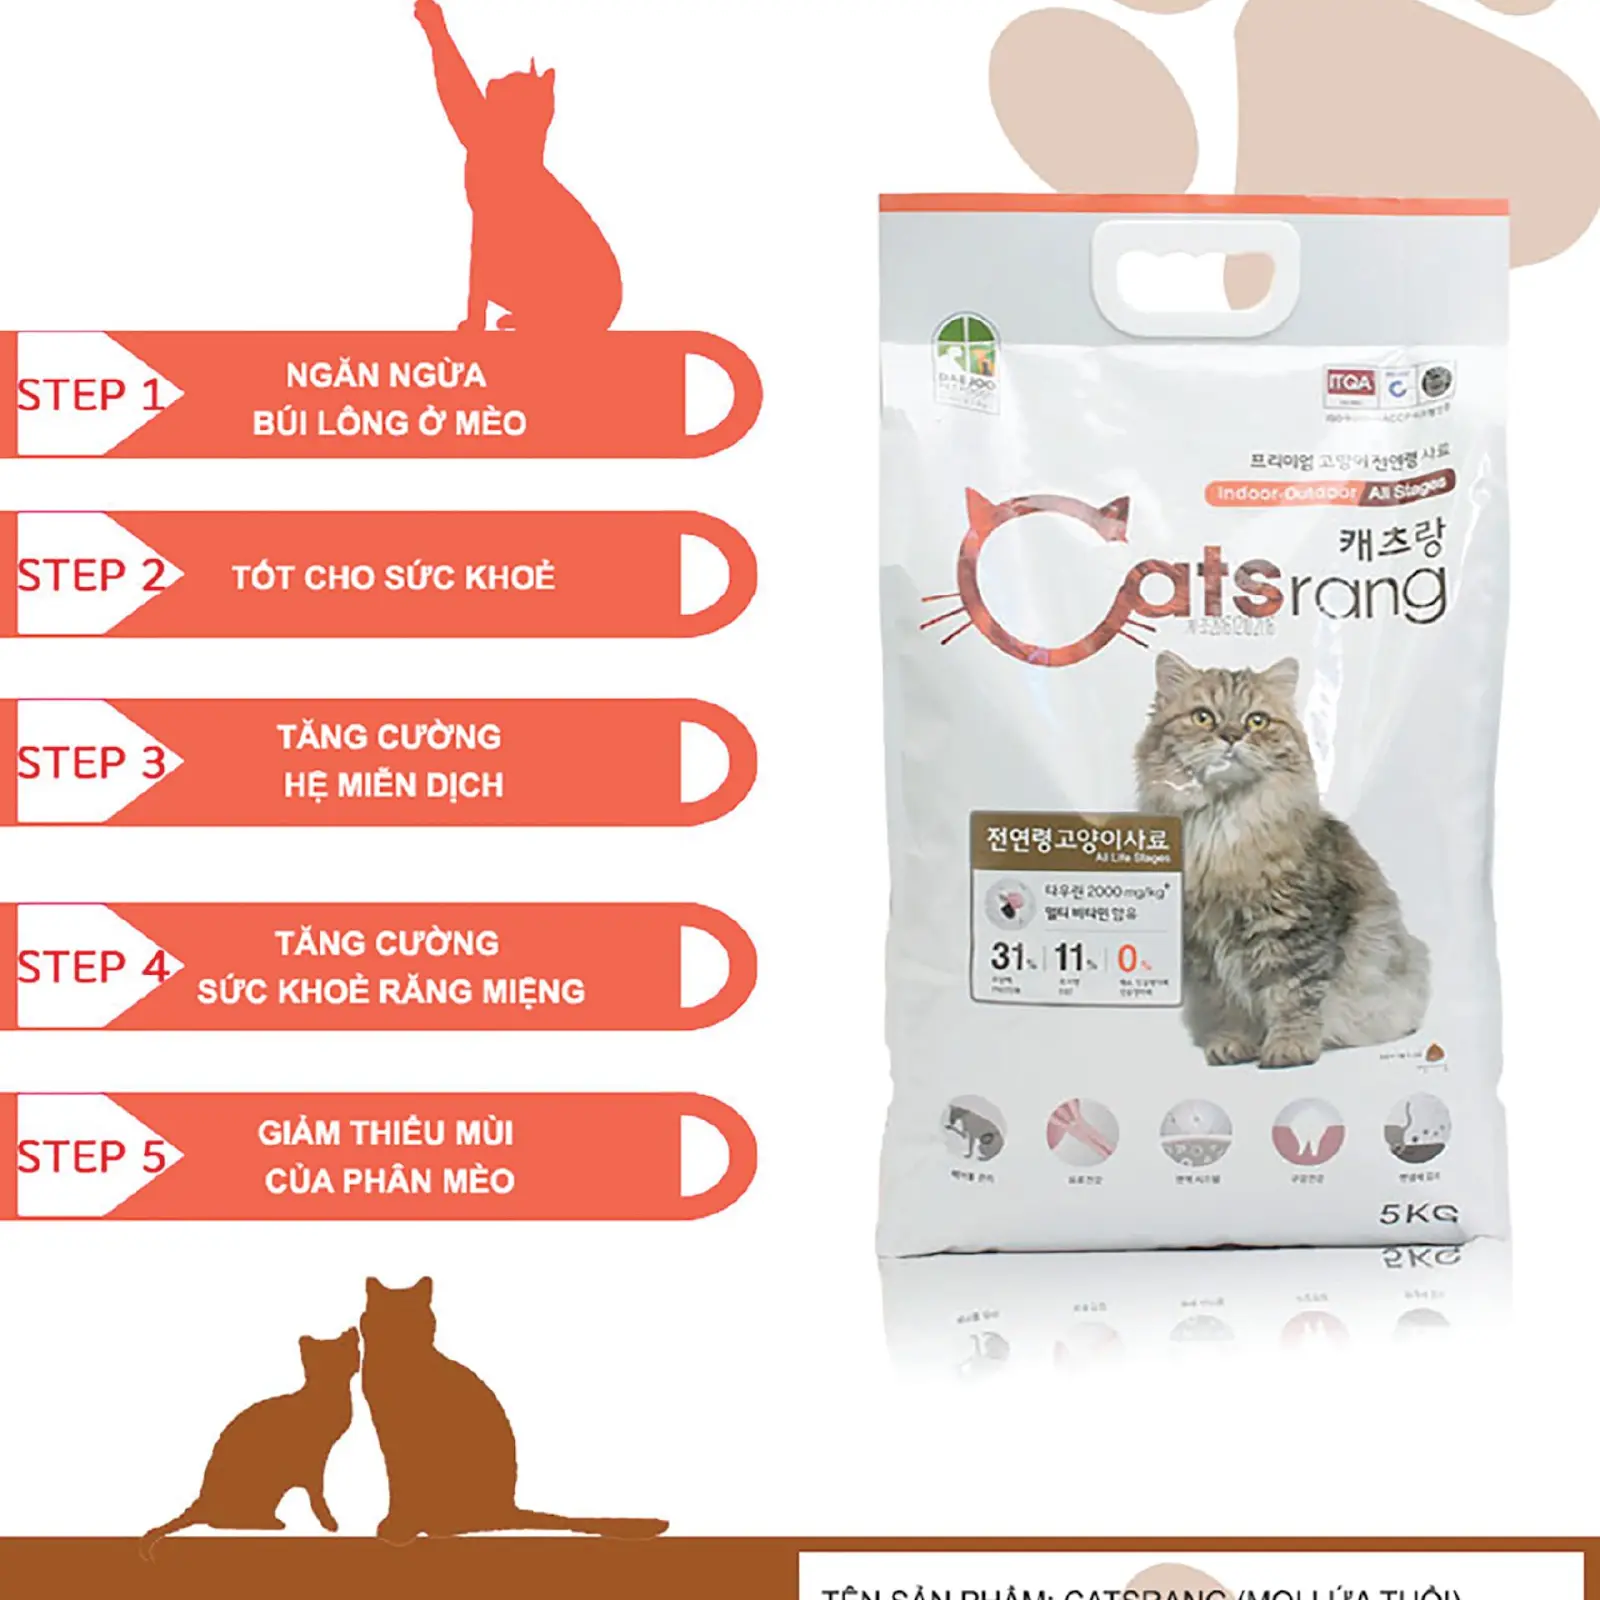 Catsrang Seeds 10kg Bổ dưỡng, giá rẻ, thích hợp cho mèo mọi lứa tuổi